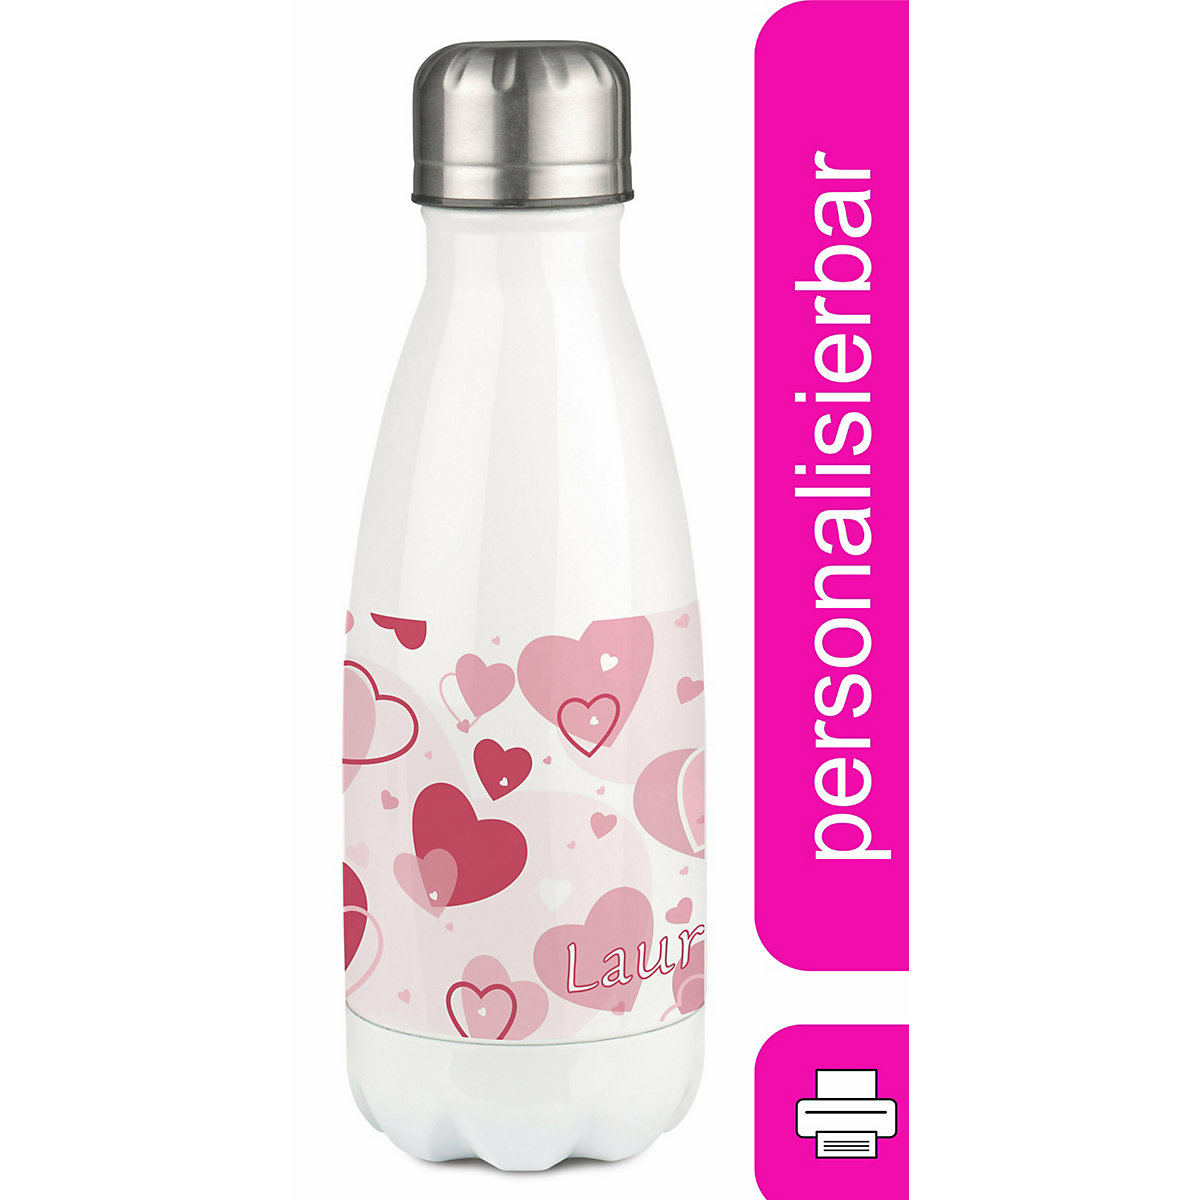 CreaDesign Edelstahl Kinder Thermoflasche / Trinkflasche bunt Herz Farbe rosa Spülmaschinenfest Auslaufsicher Bruchfest Doppelwandig Für Heißgetränke geeignet Mit Deckel Isoliert